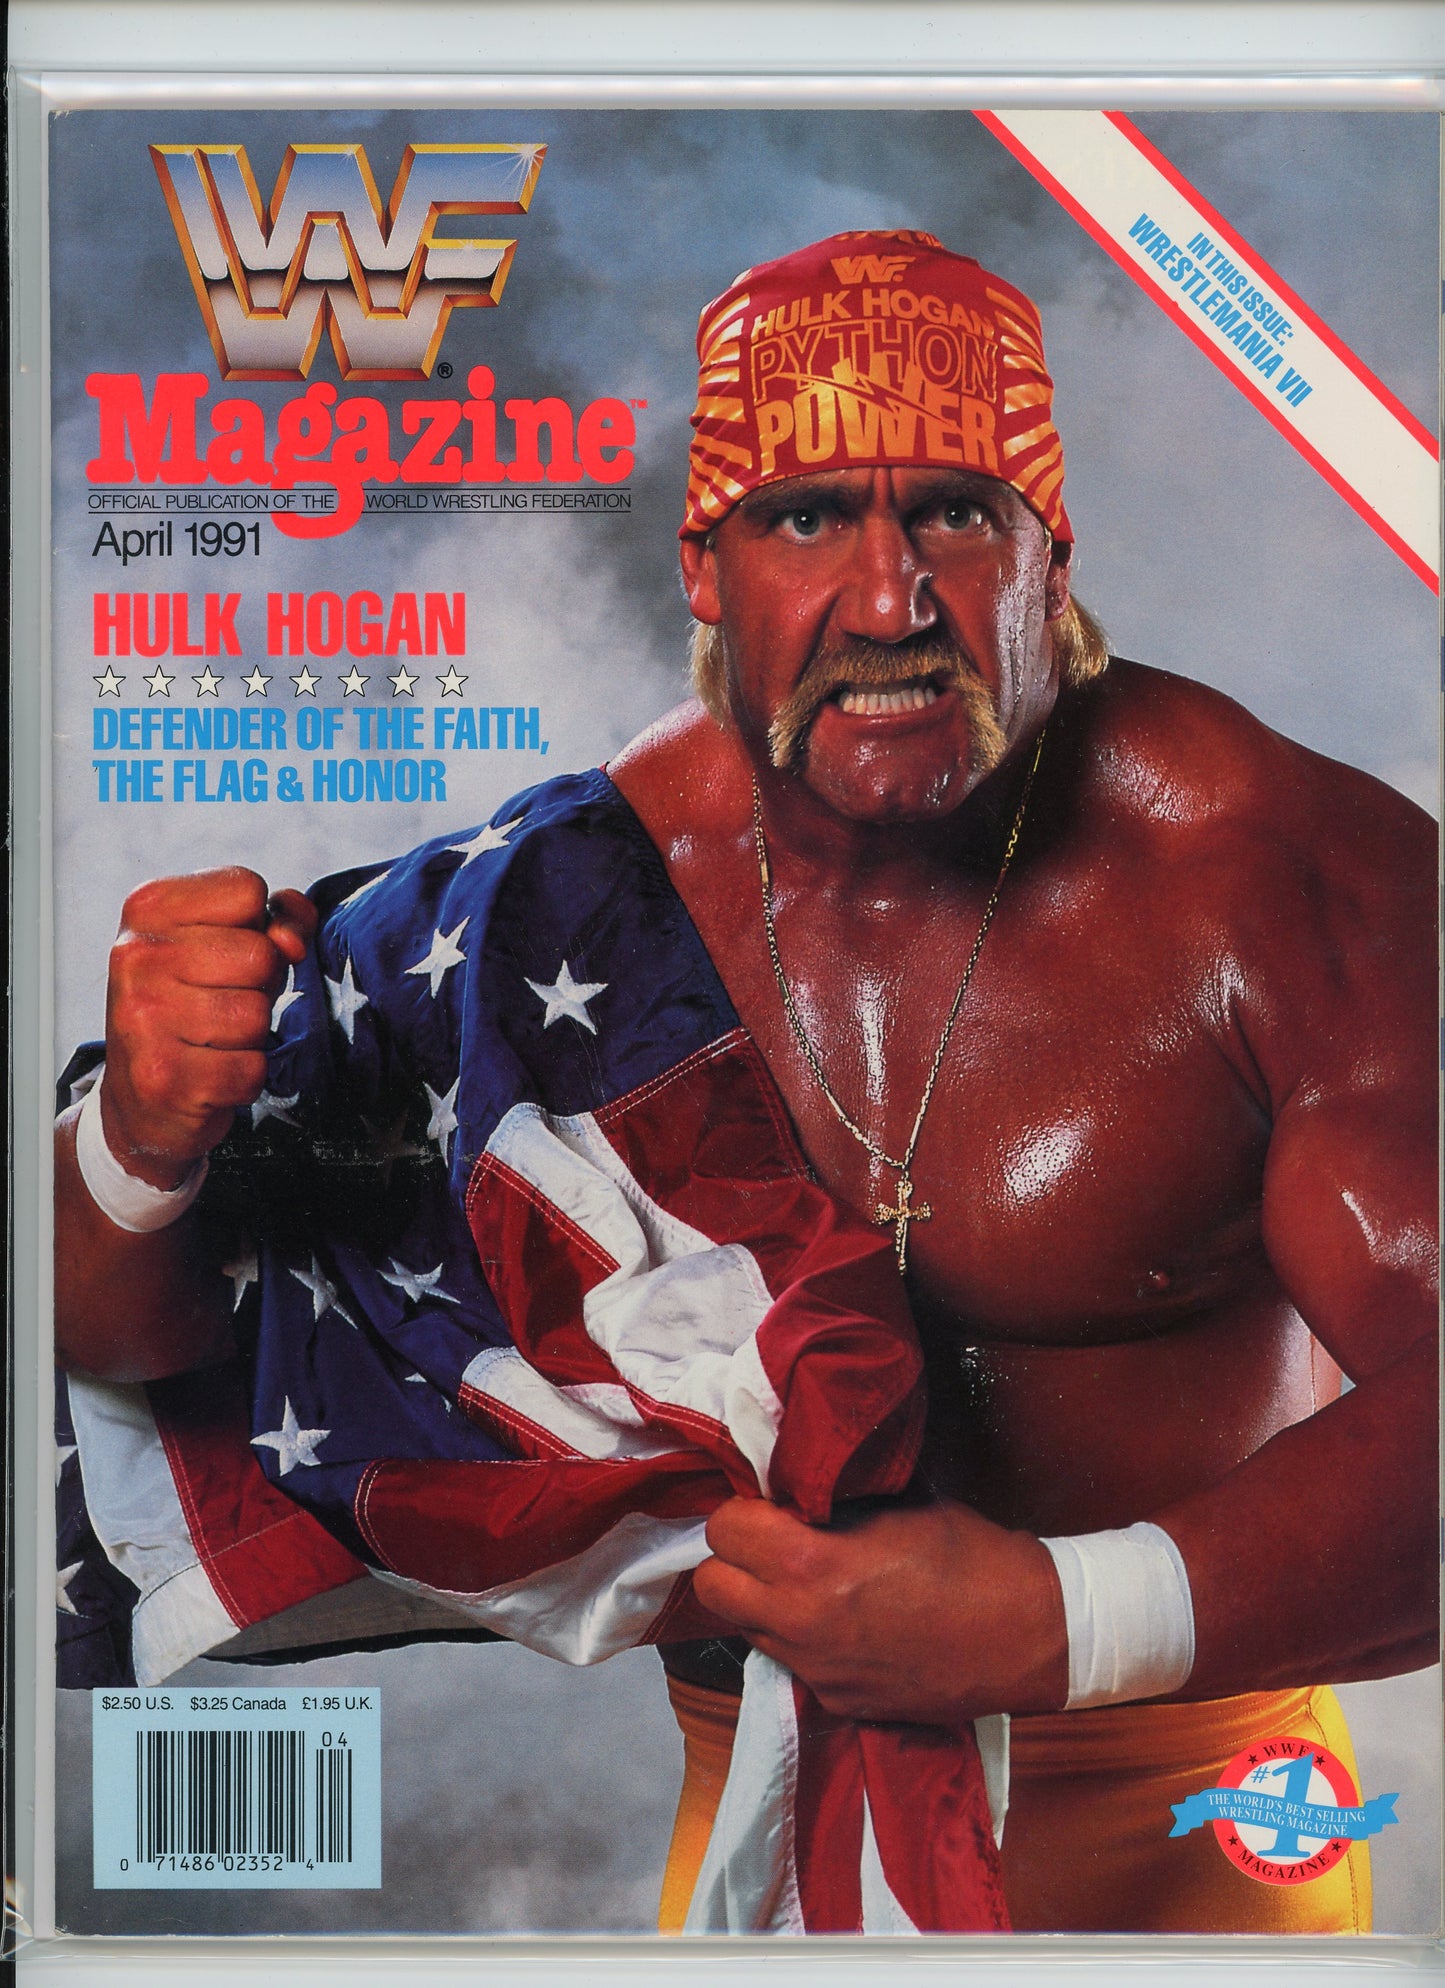 WWF Magazine (April 1991) Hulk Hogan